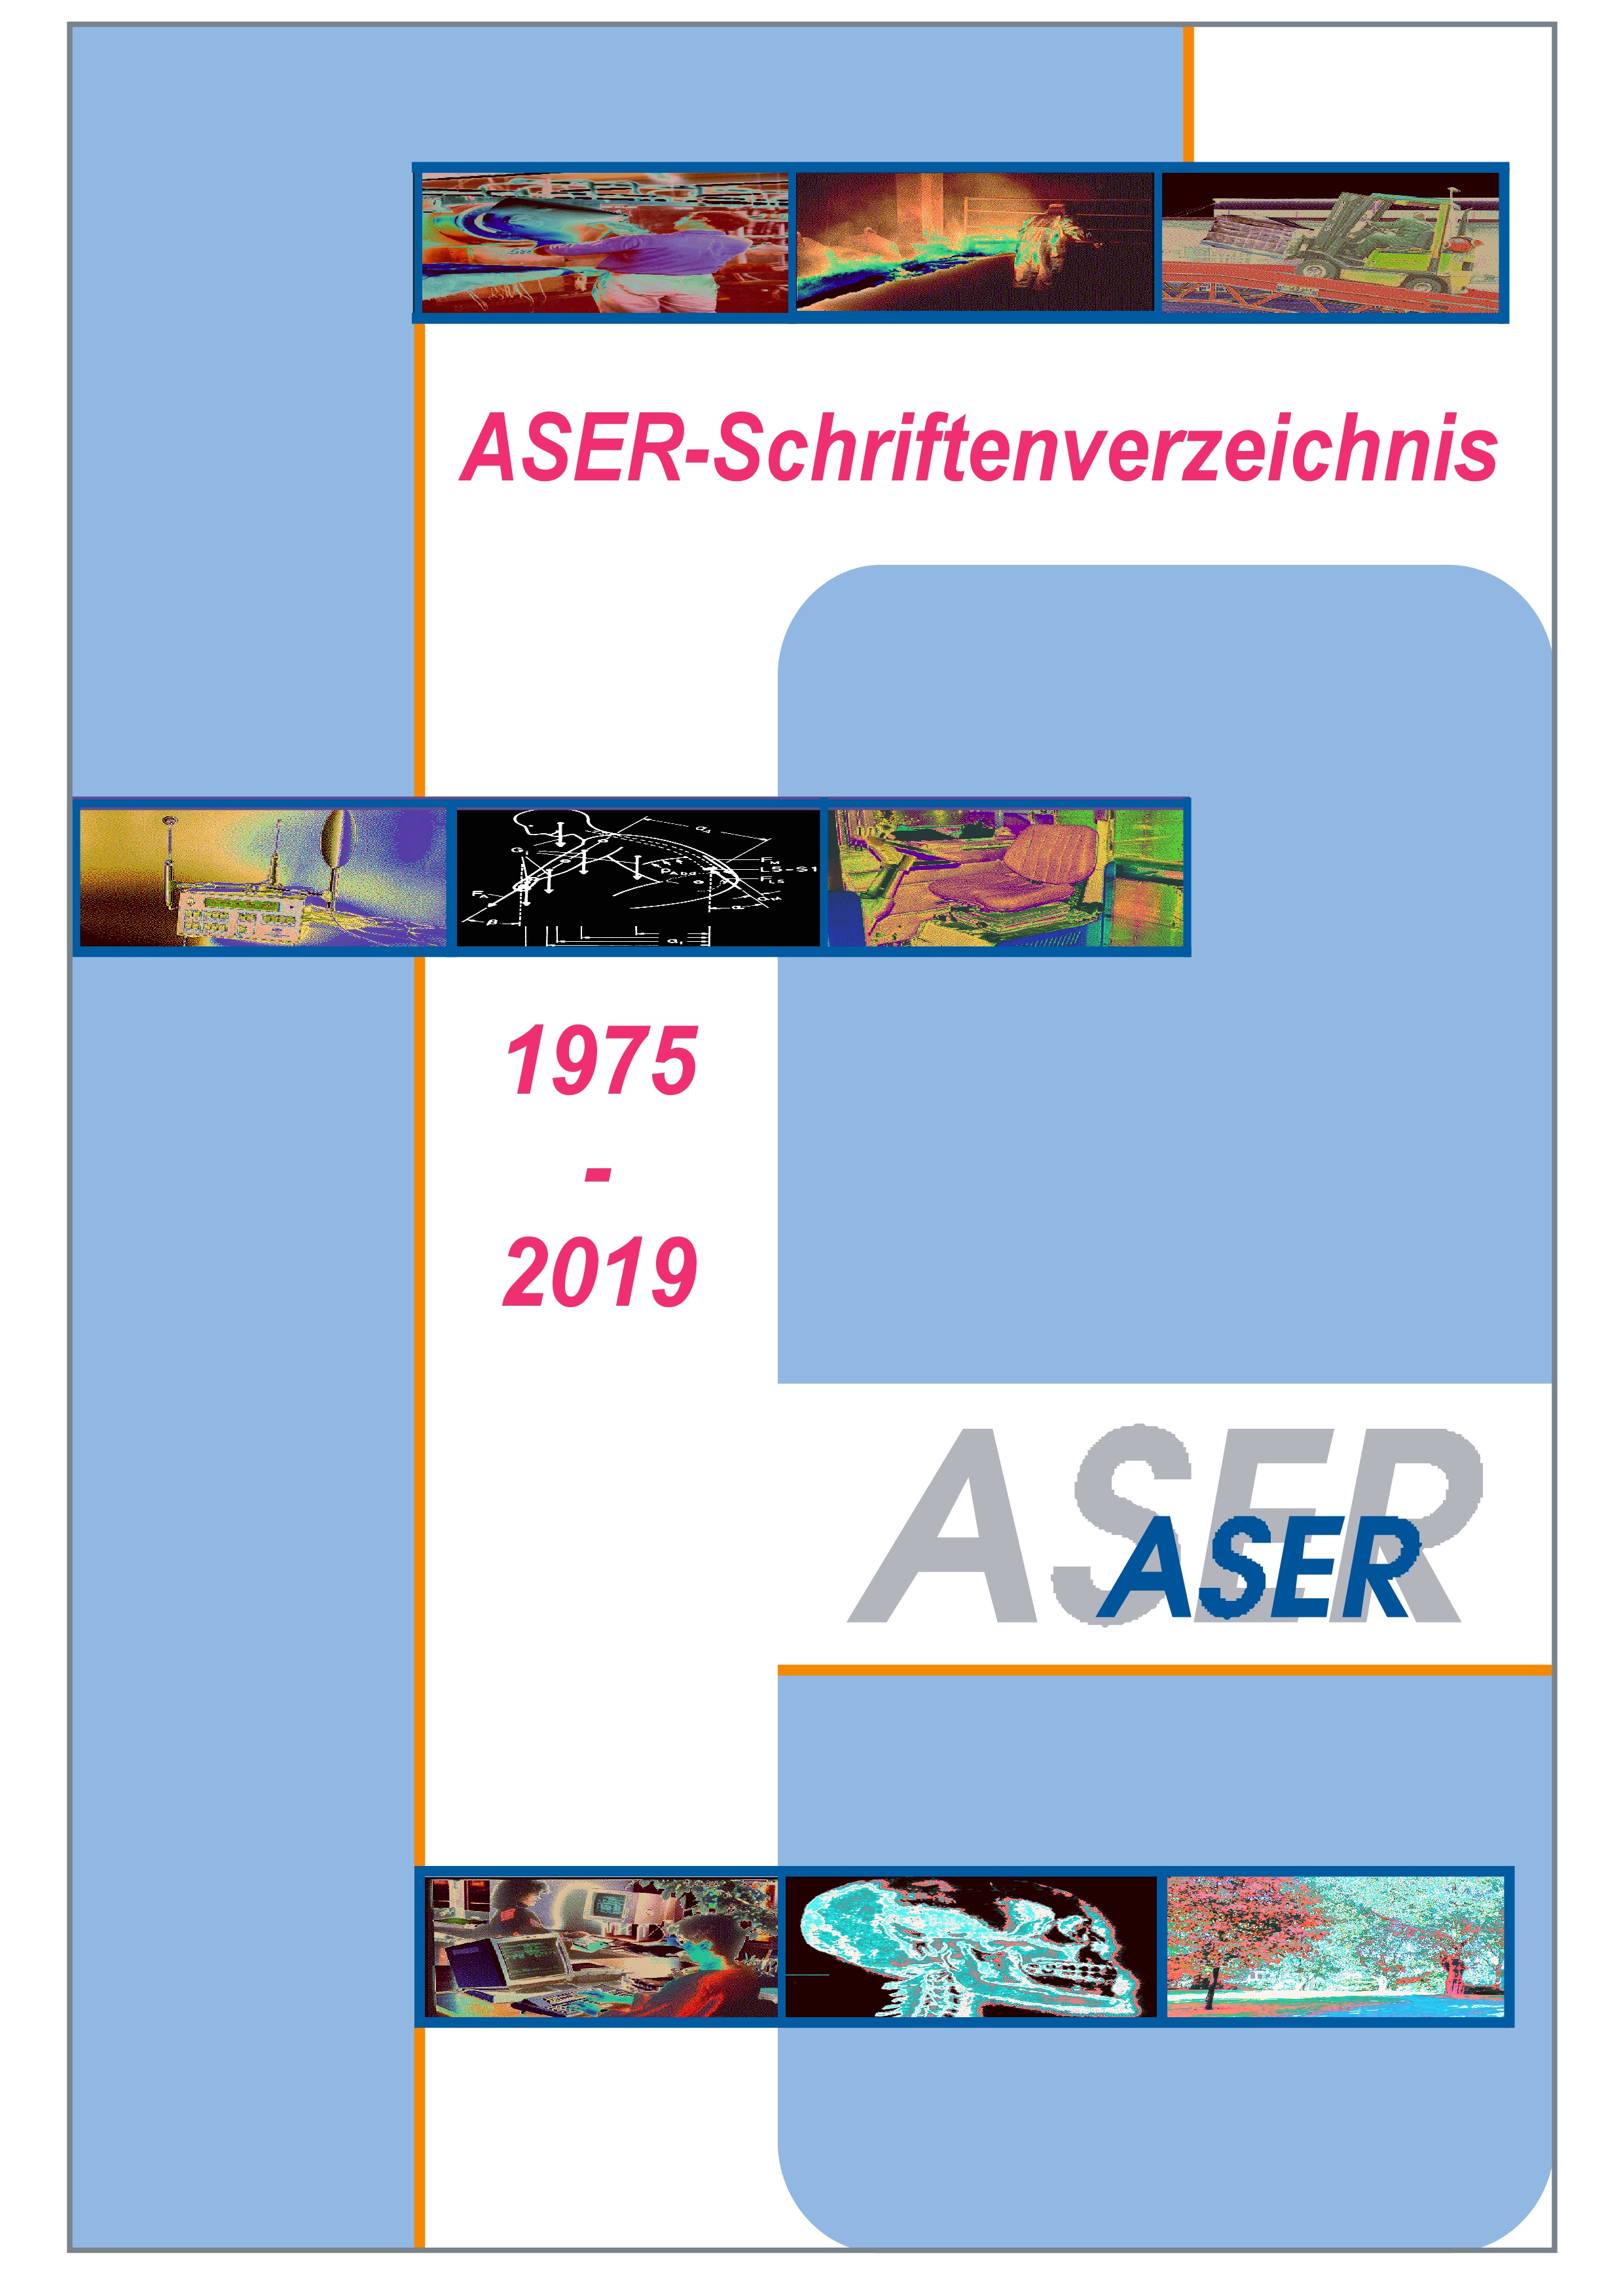 ASER-Schriftenverzeichnis 1975 - 2019